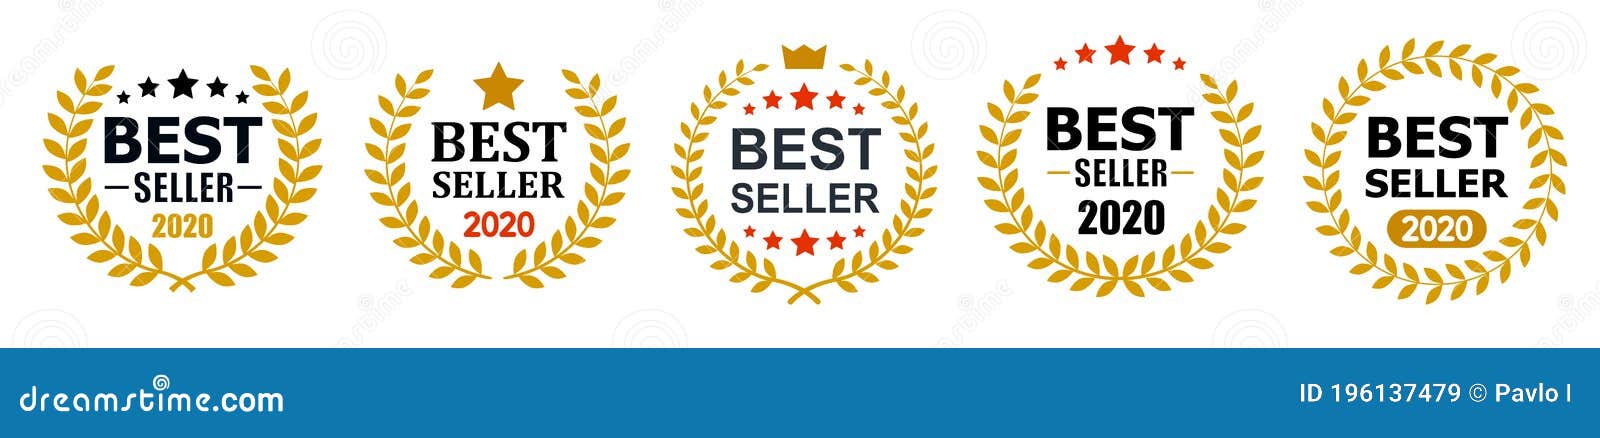 Best seller badge icon, Best seller award logo isolated, vector  Illustration Stock Vector